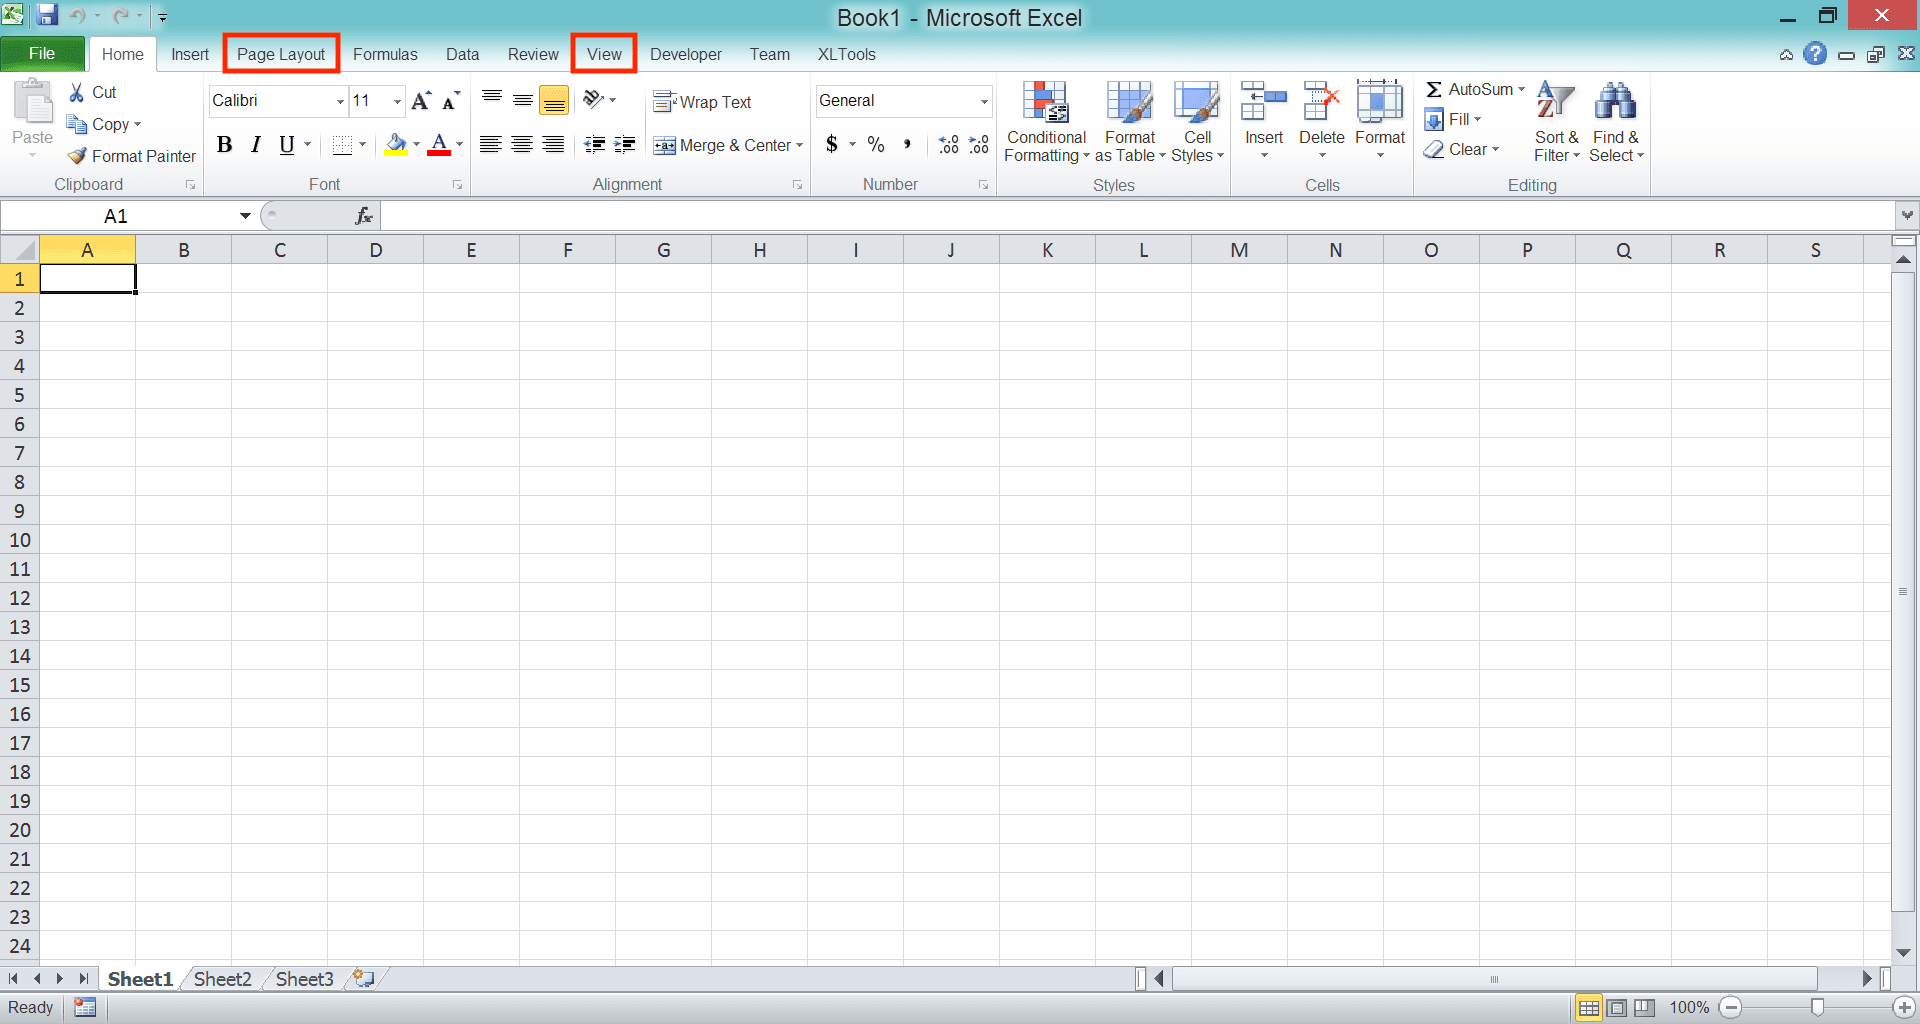 Cara Menghapus/Menghilangkan Garis di Excel - Screenshot Langkah Metode Tab View/Page Layout 1